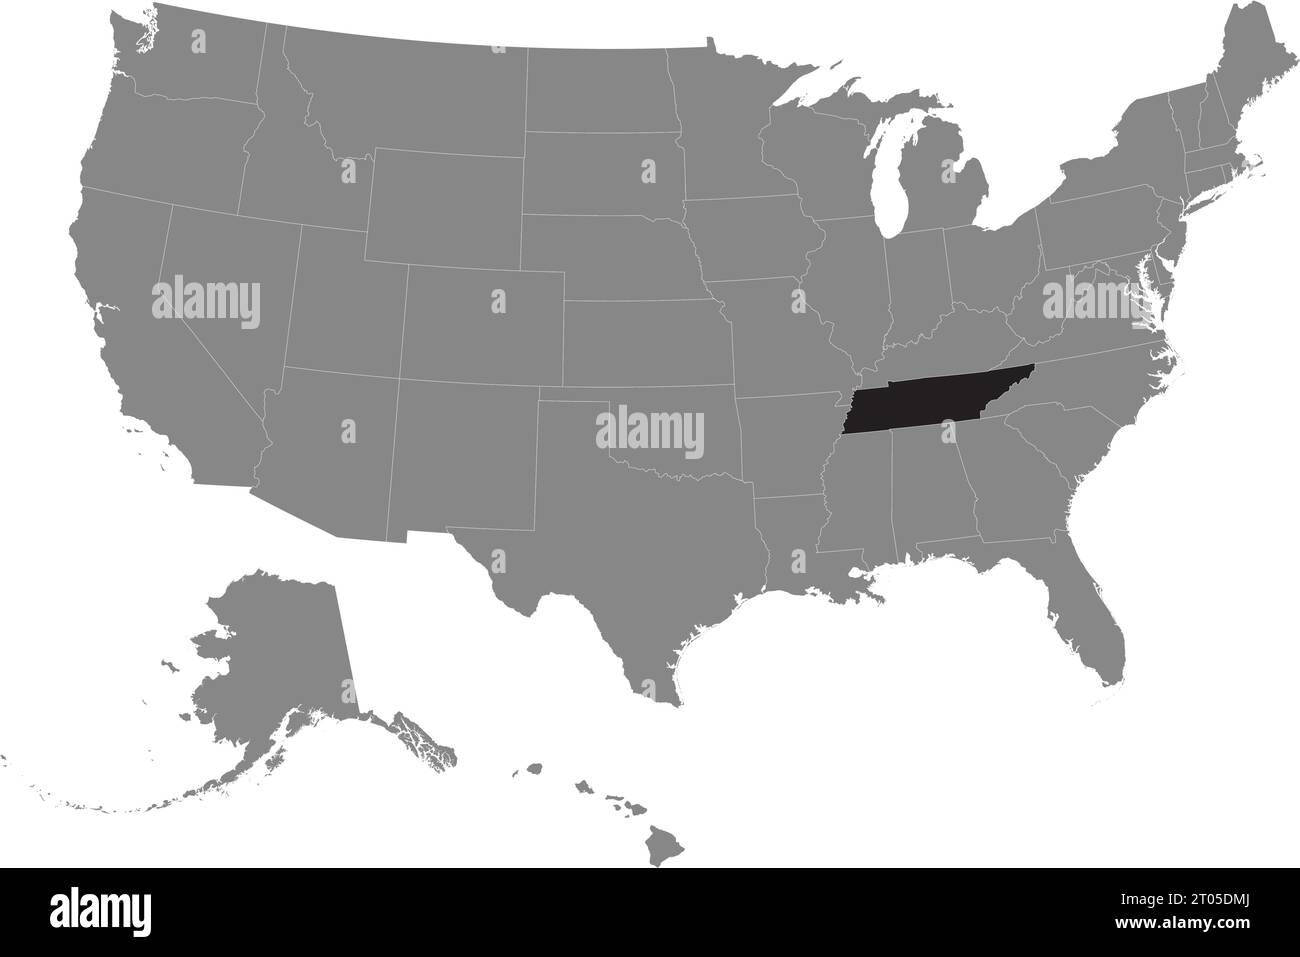 Schwarze CMYK-Bundeskarte von TENNESSEE in detaillierter grauer, leerer politischer Karte der Vereinigten Staaten von Amerika auf transparentem Hintergrund Stock Vektor